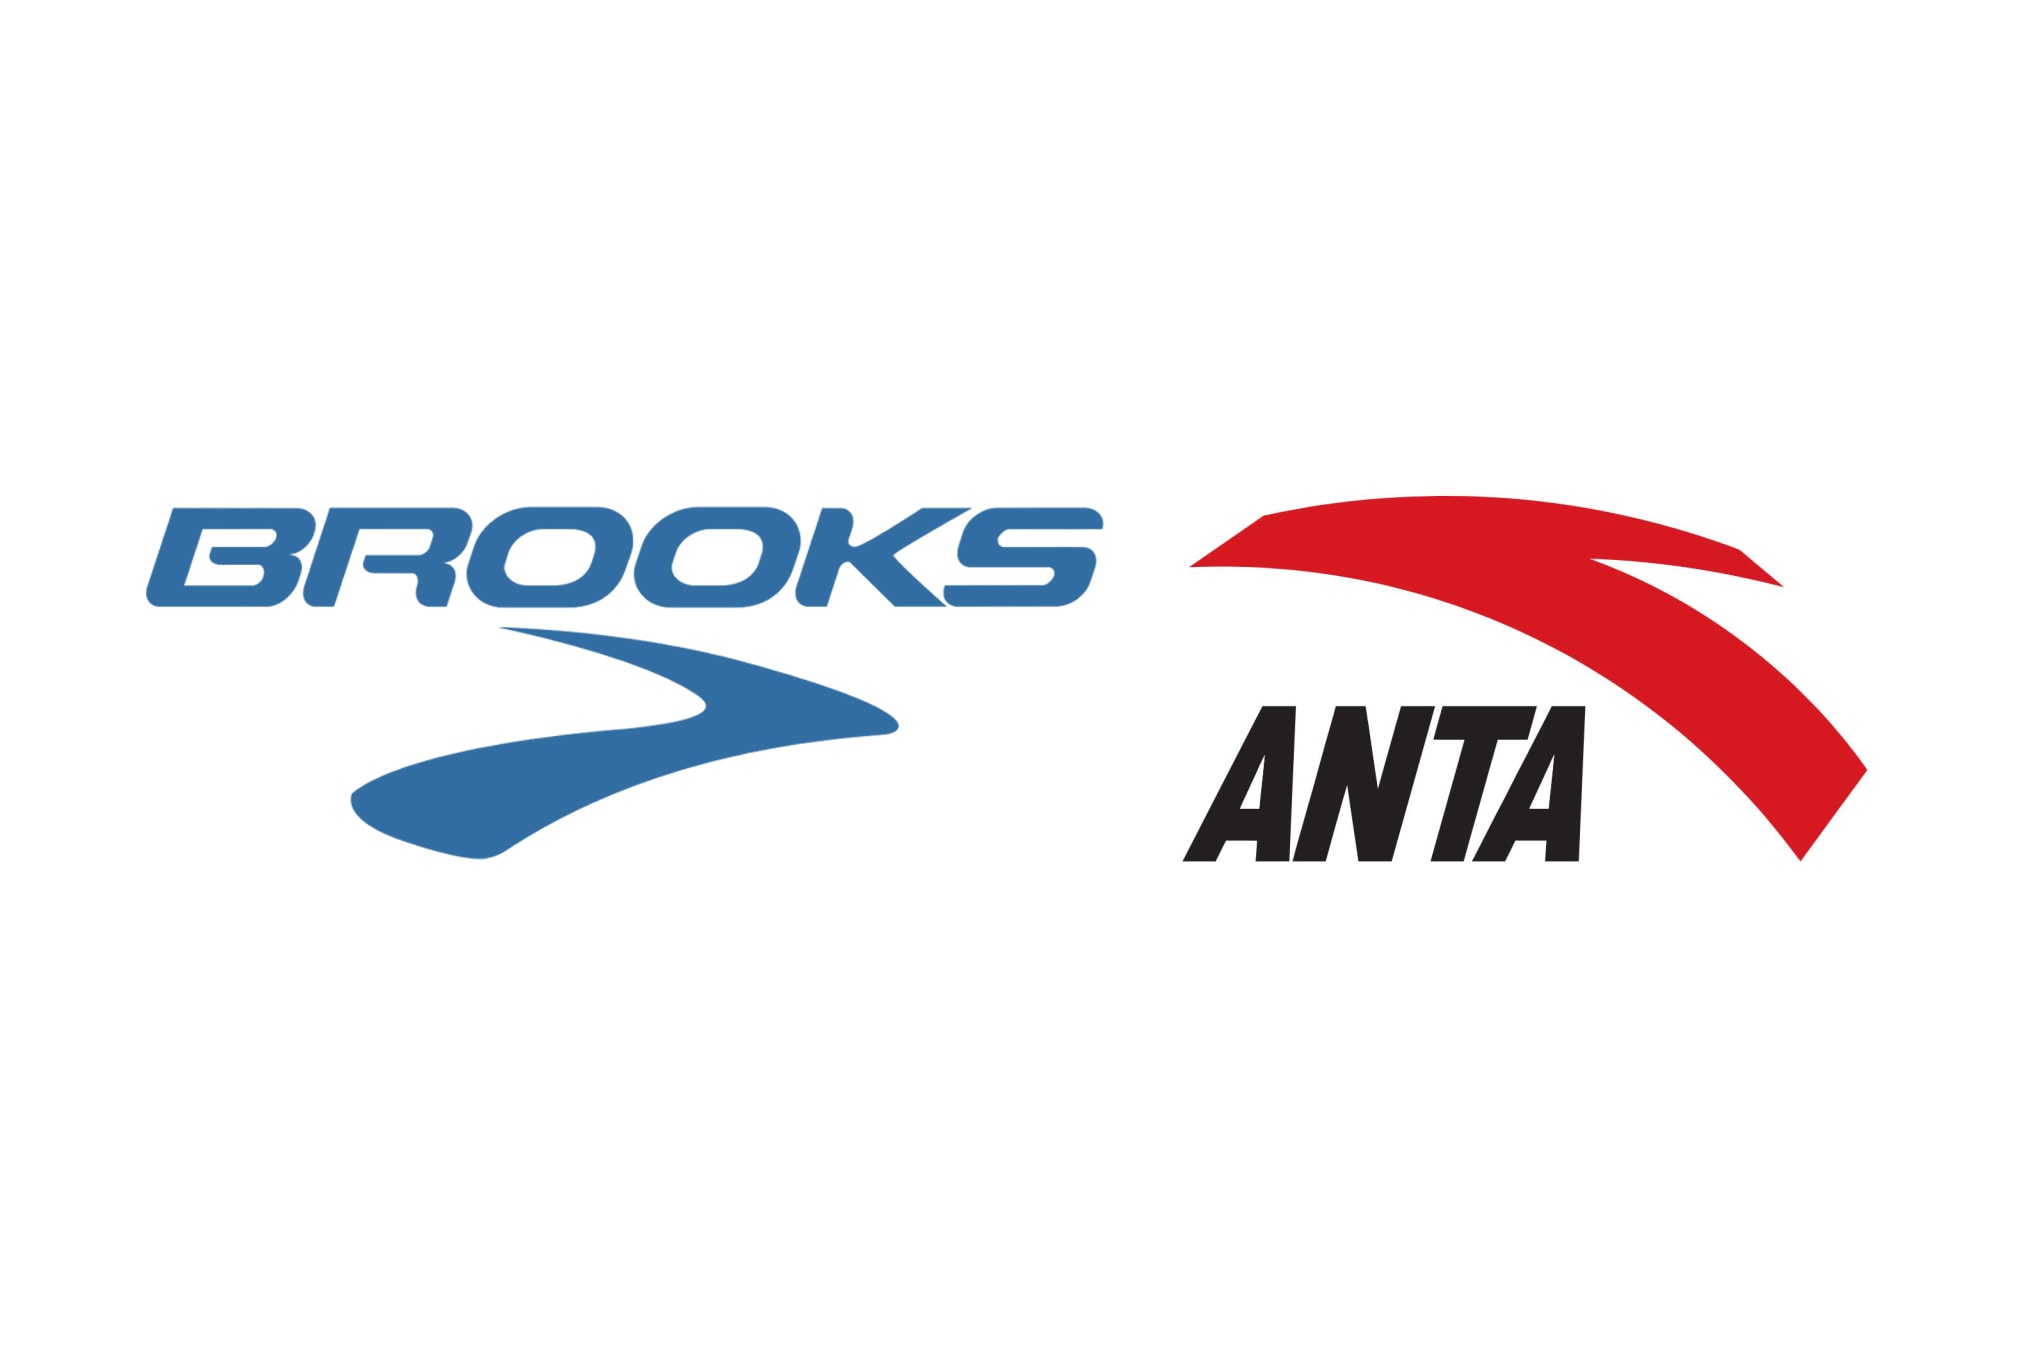 中國運動品牌 ANTA 起訴美國跑鞋品牌 Brooks 商標侵權勝訴